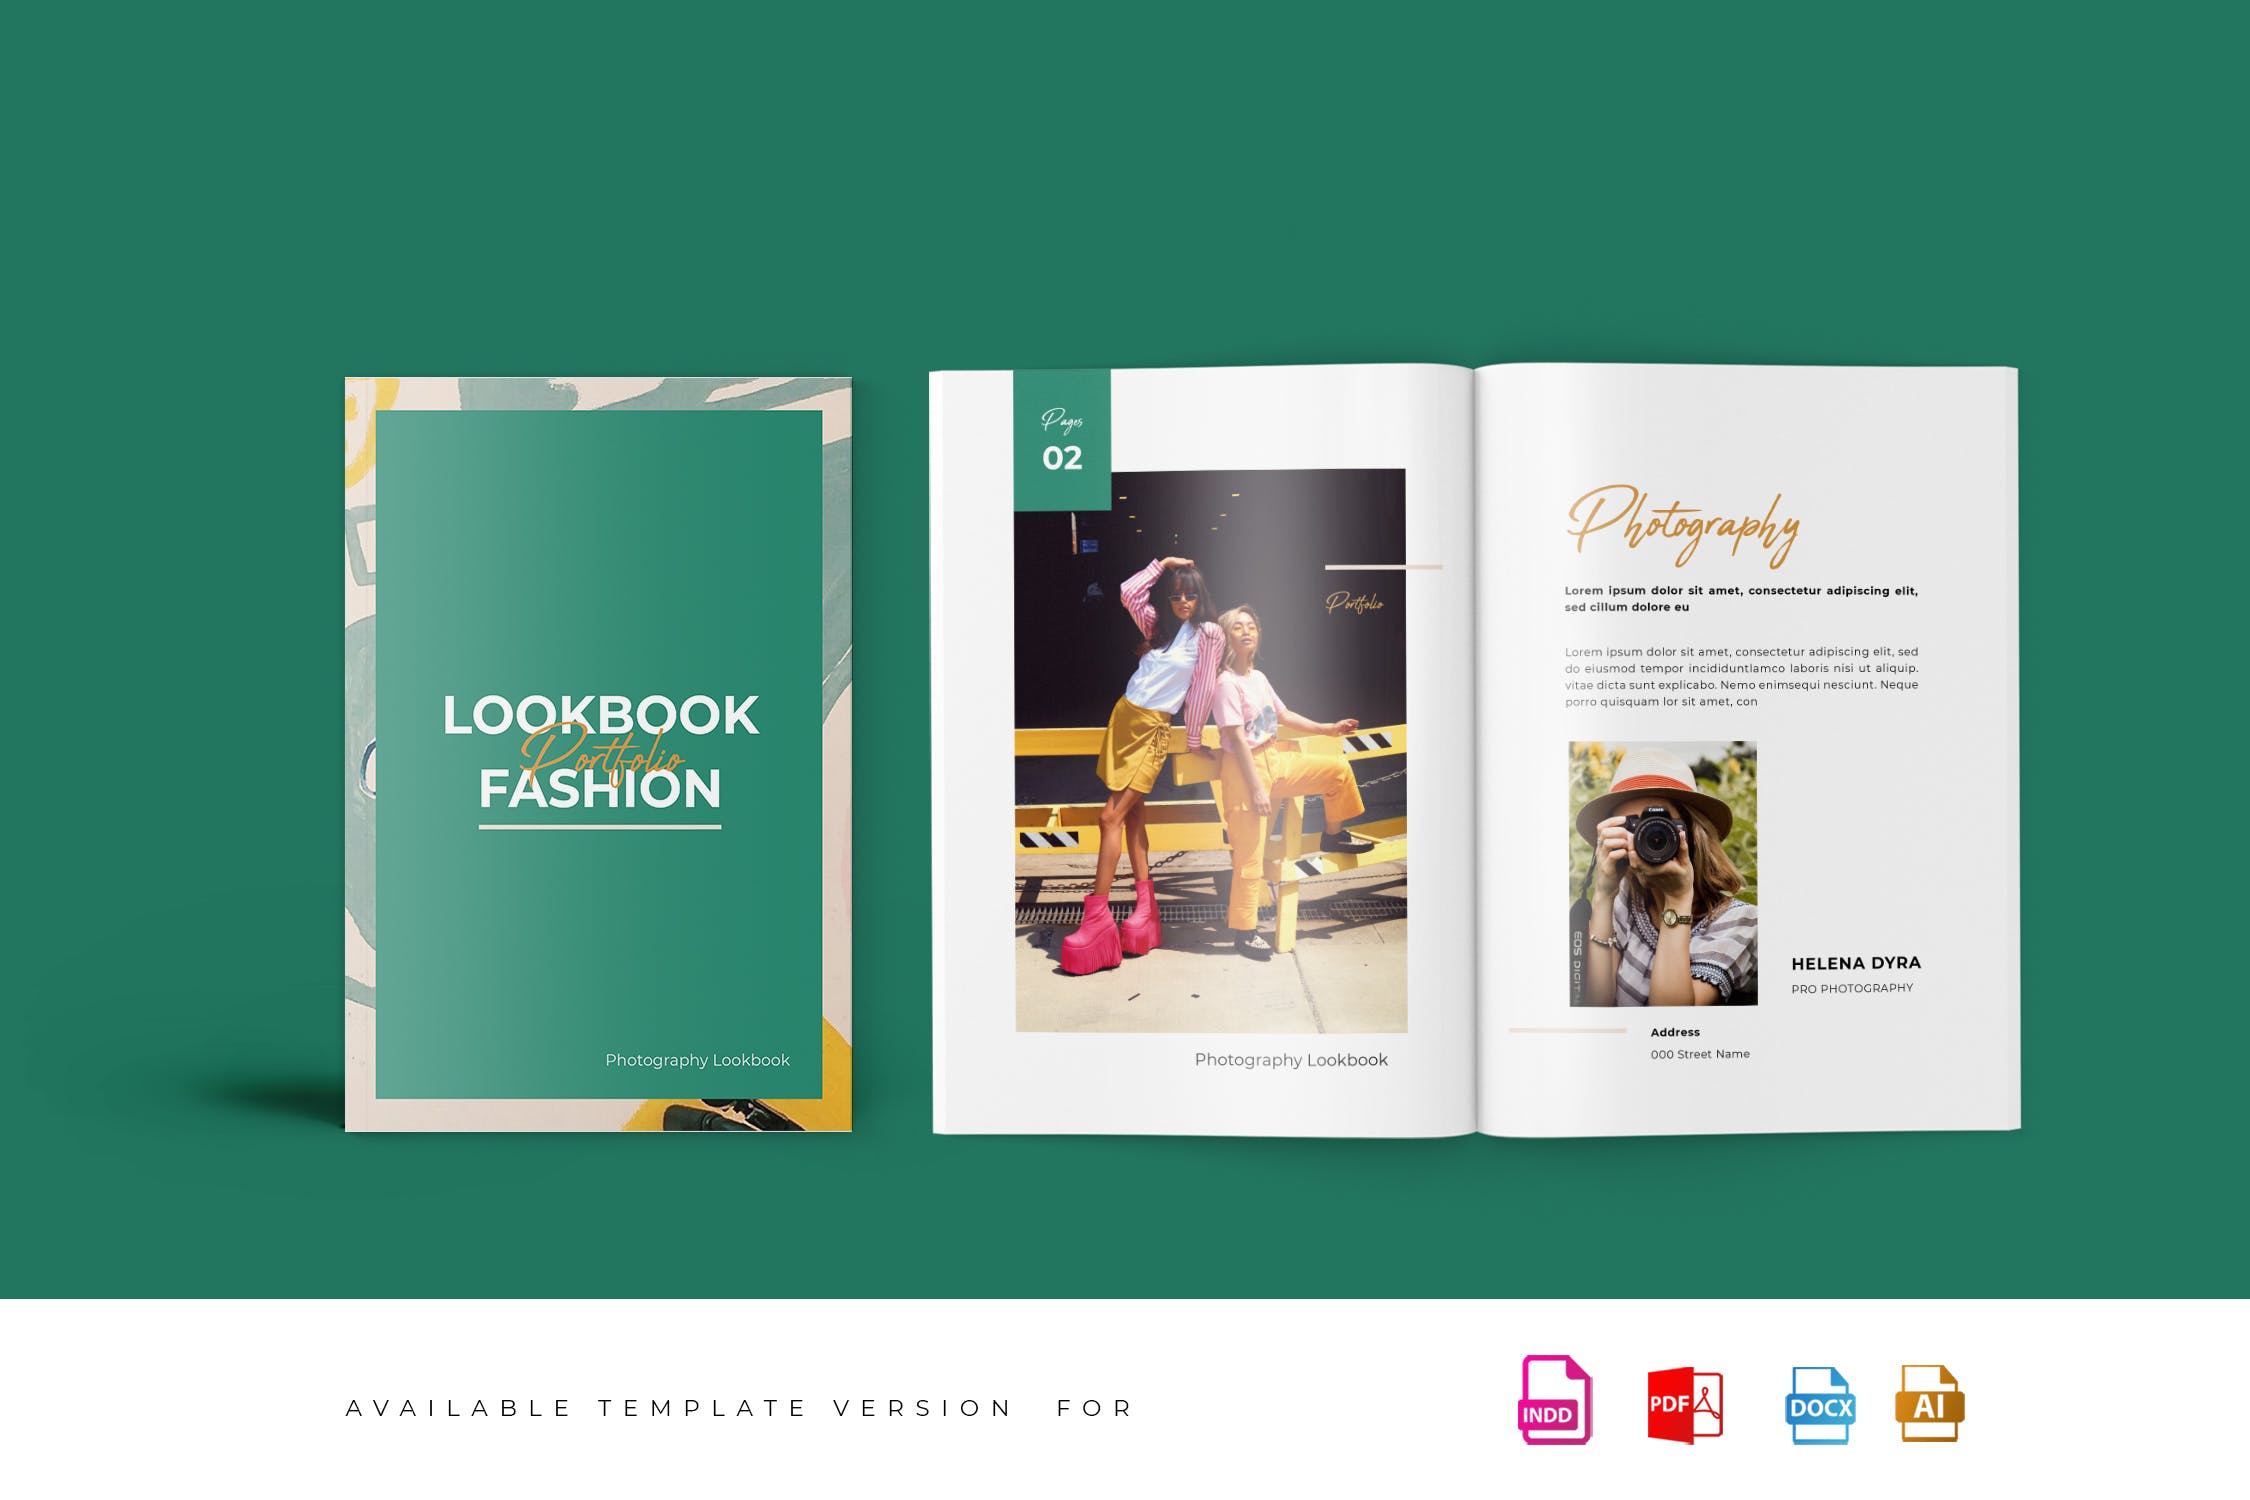 时尚服饰品牌公司新品上市产品手册设计模板 Fashion Lookbook Portfolio插图